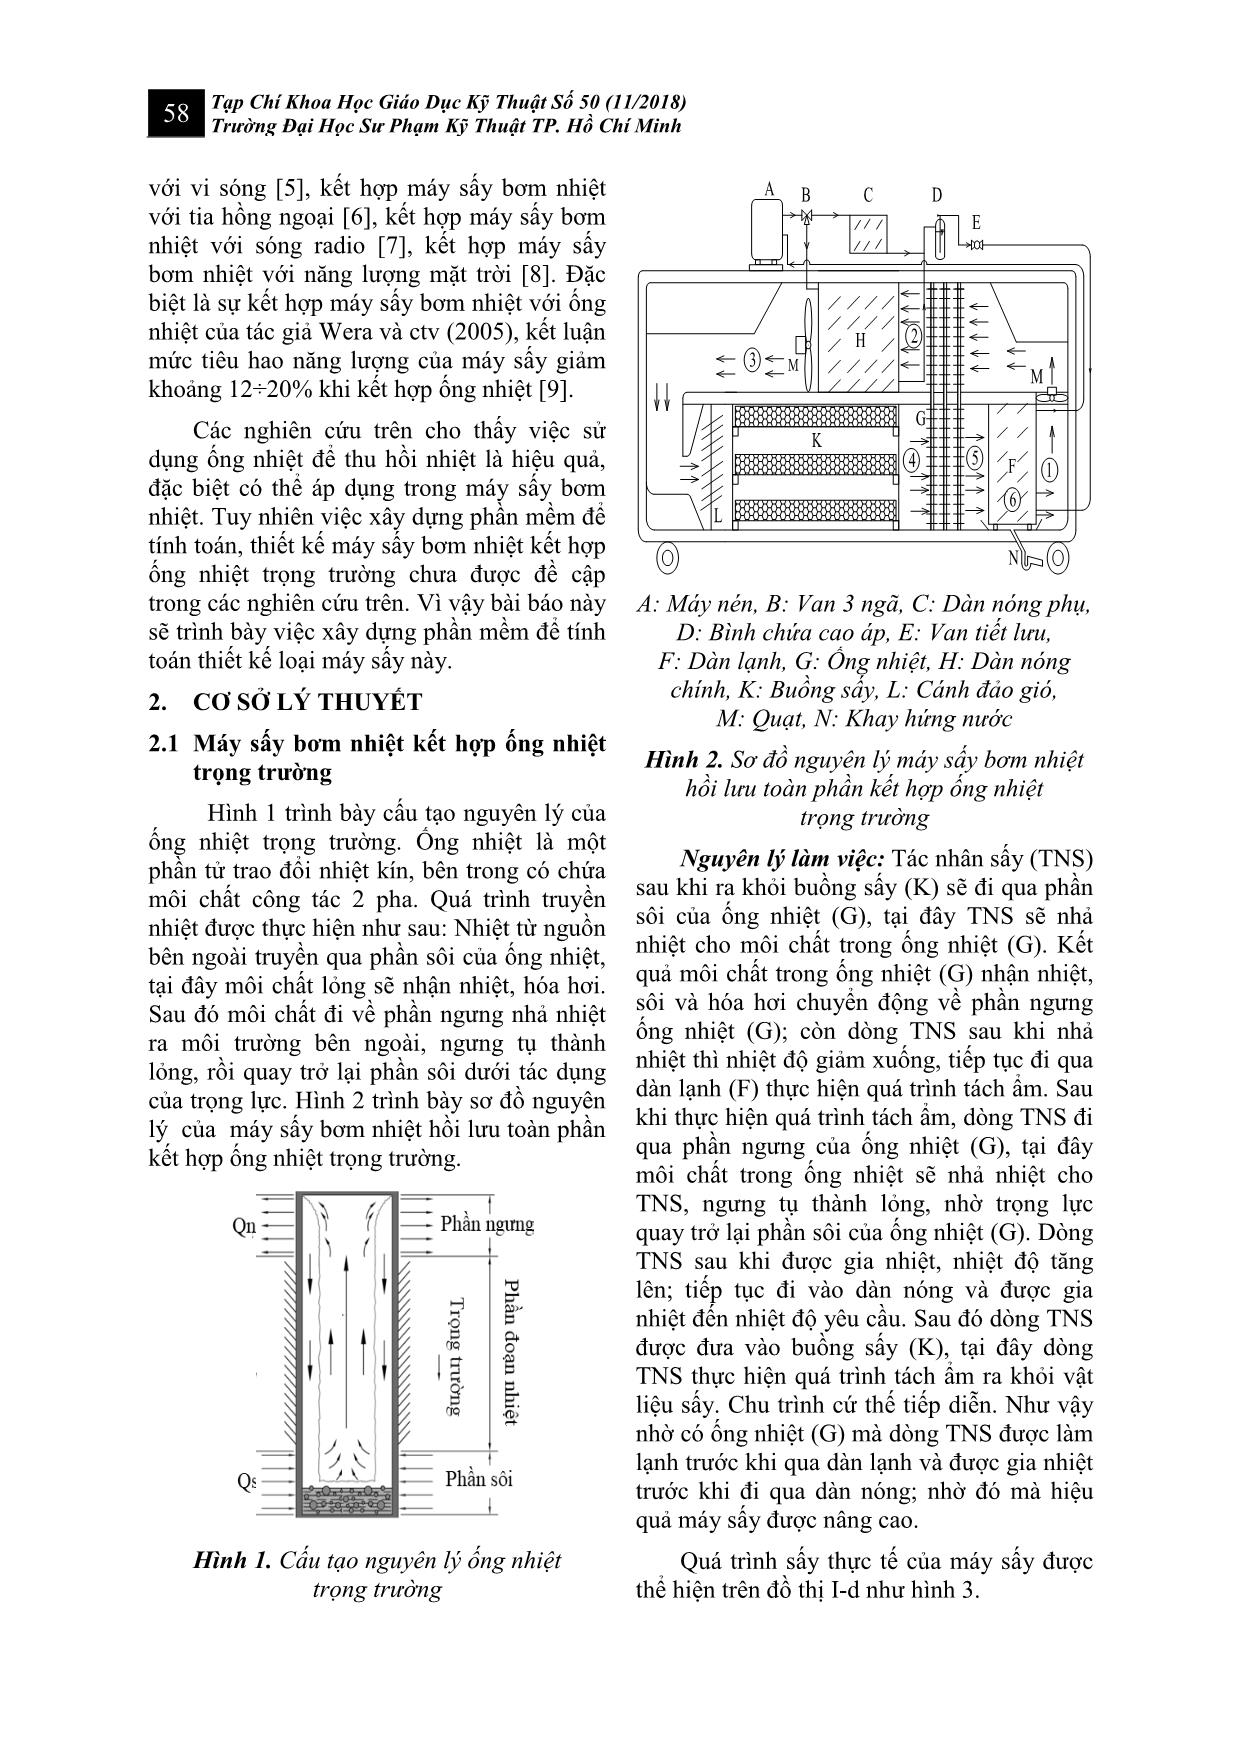 Xây dựng phần mềm tính toán, thiết kế máy sấy bơm nhiệt kết hợp ống nhiệt trọng trường trang 2